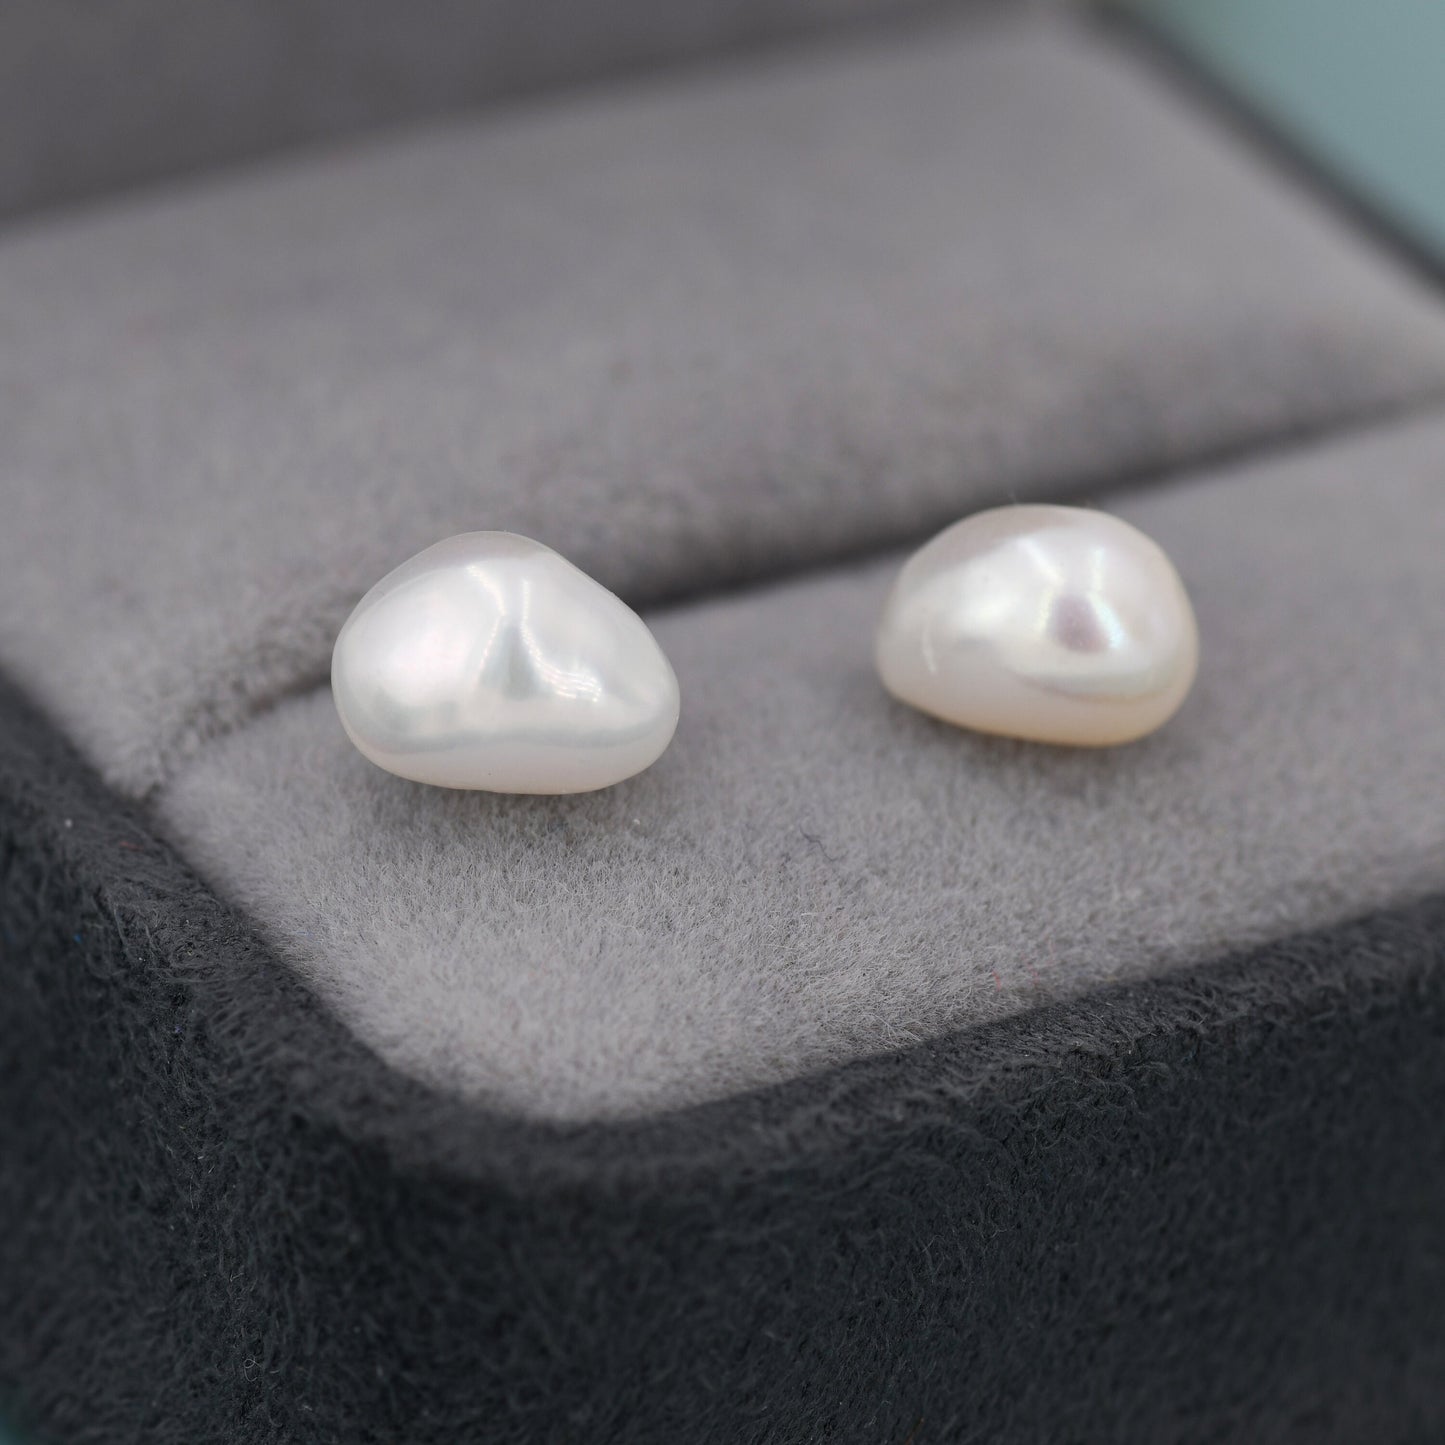 Keshi Pearls Stud Earrings in Sterling Silver, Baroque Pearl Earrings, Genuine Freshwater Pearls Earrings, Simple and Minimalist,